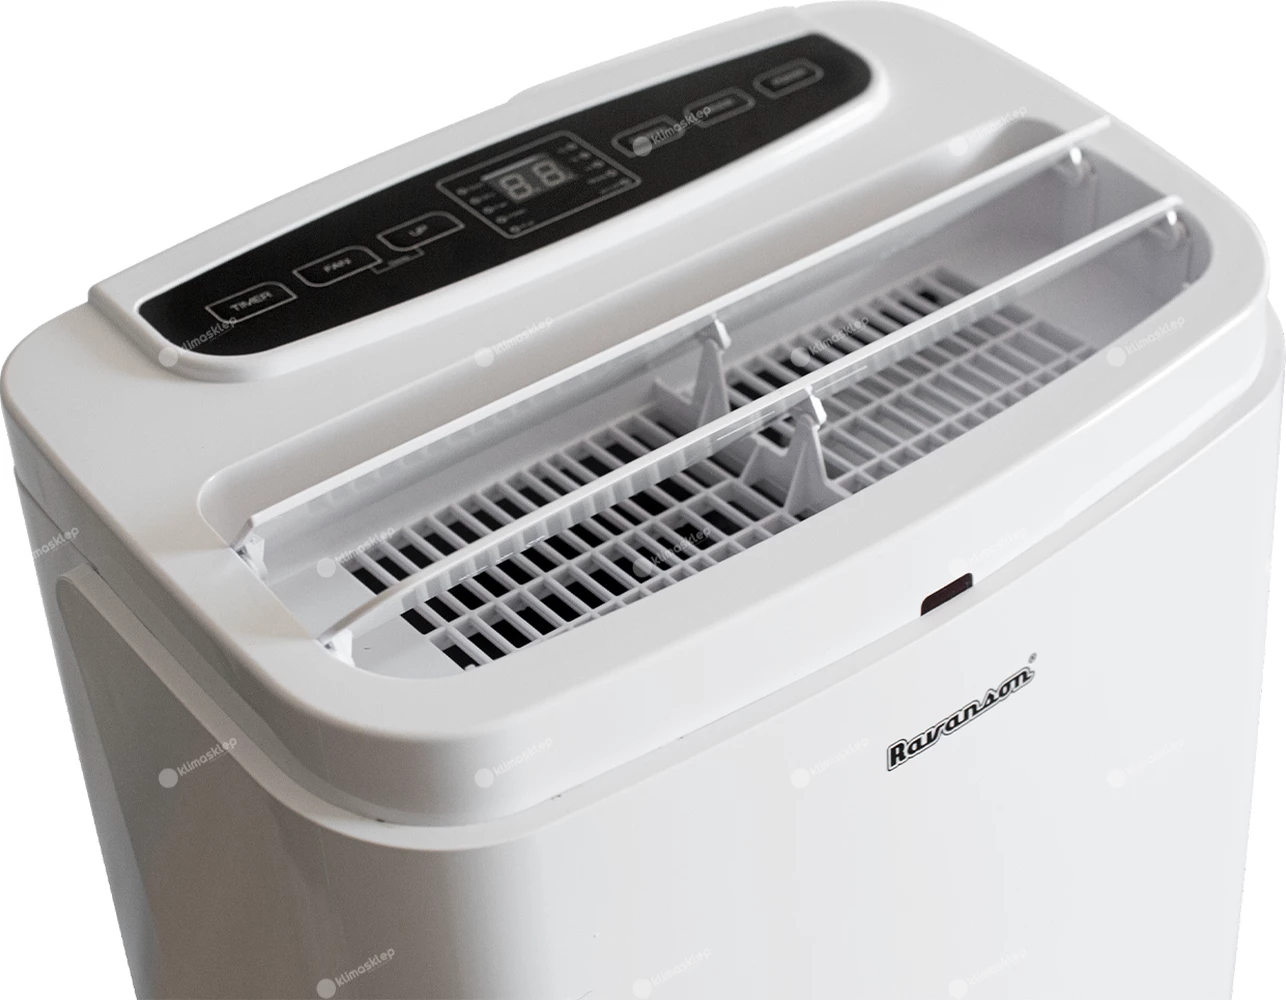 Klimatyzator przenośny Ravanson MAC-9000 - wylot zimnego powietrza